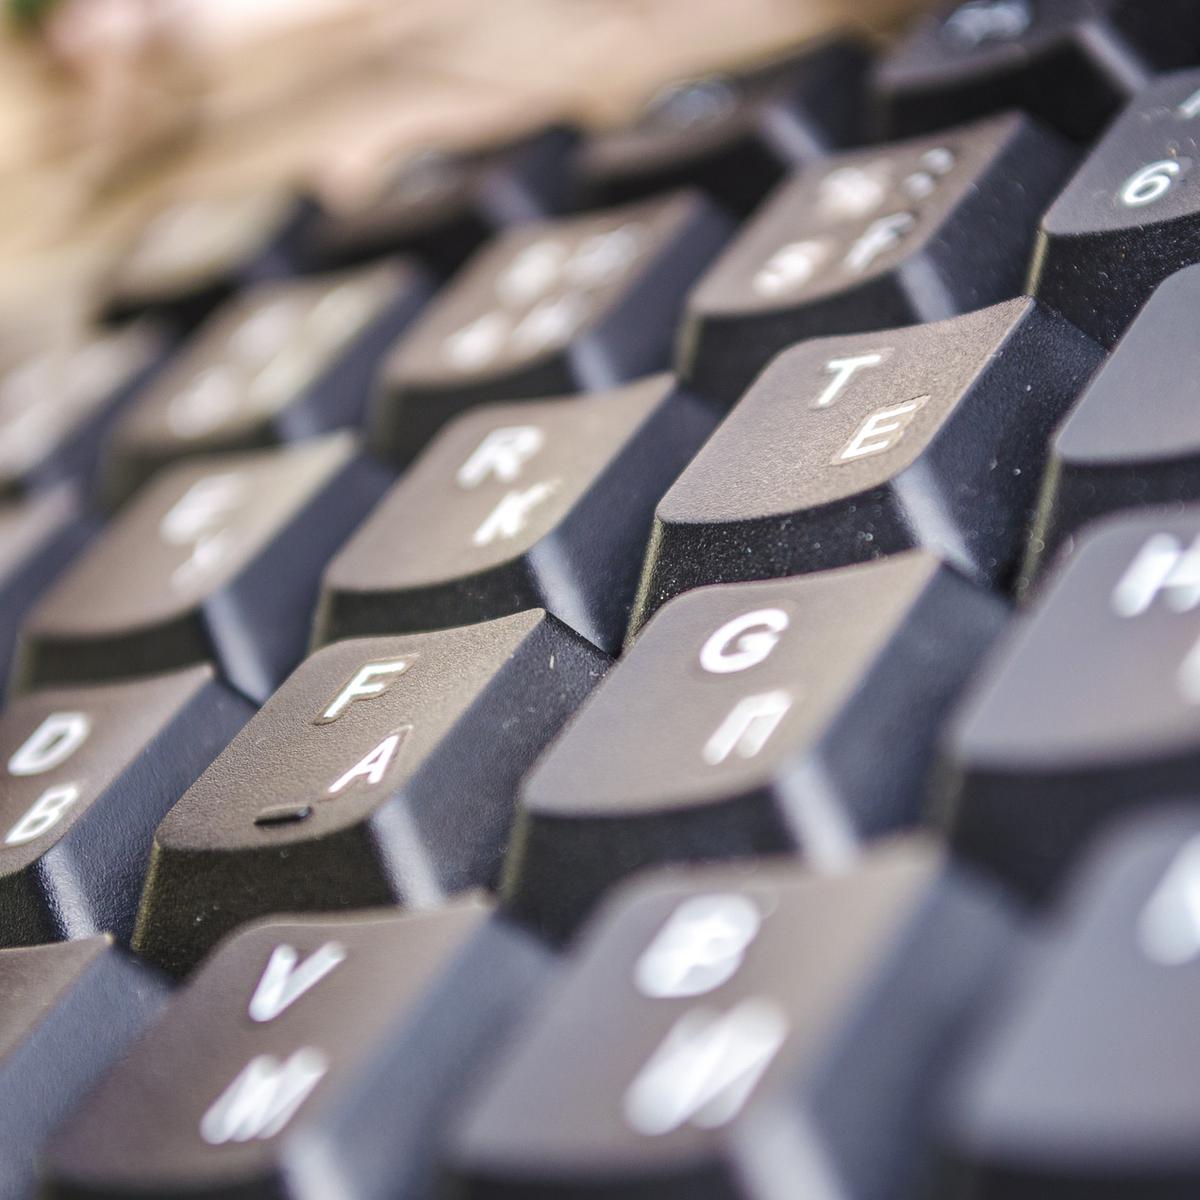 Cómo puede limpiar de manera correcta el teclado de su portátil